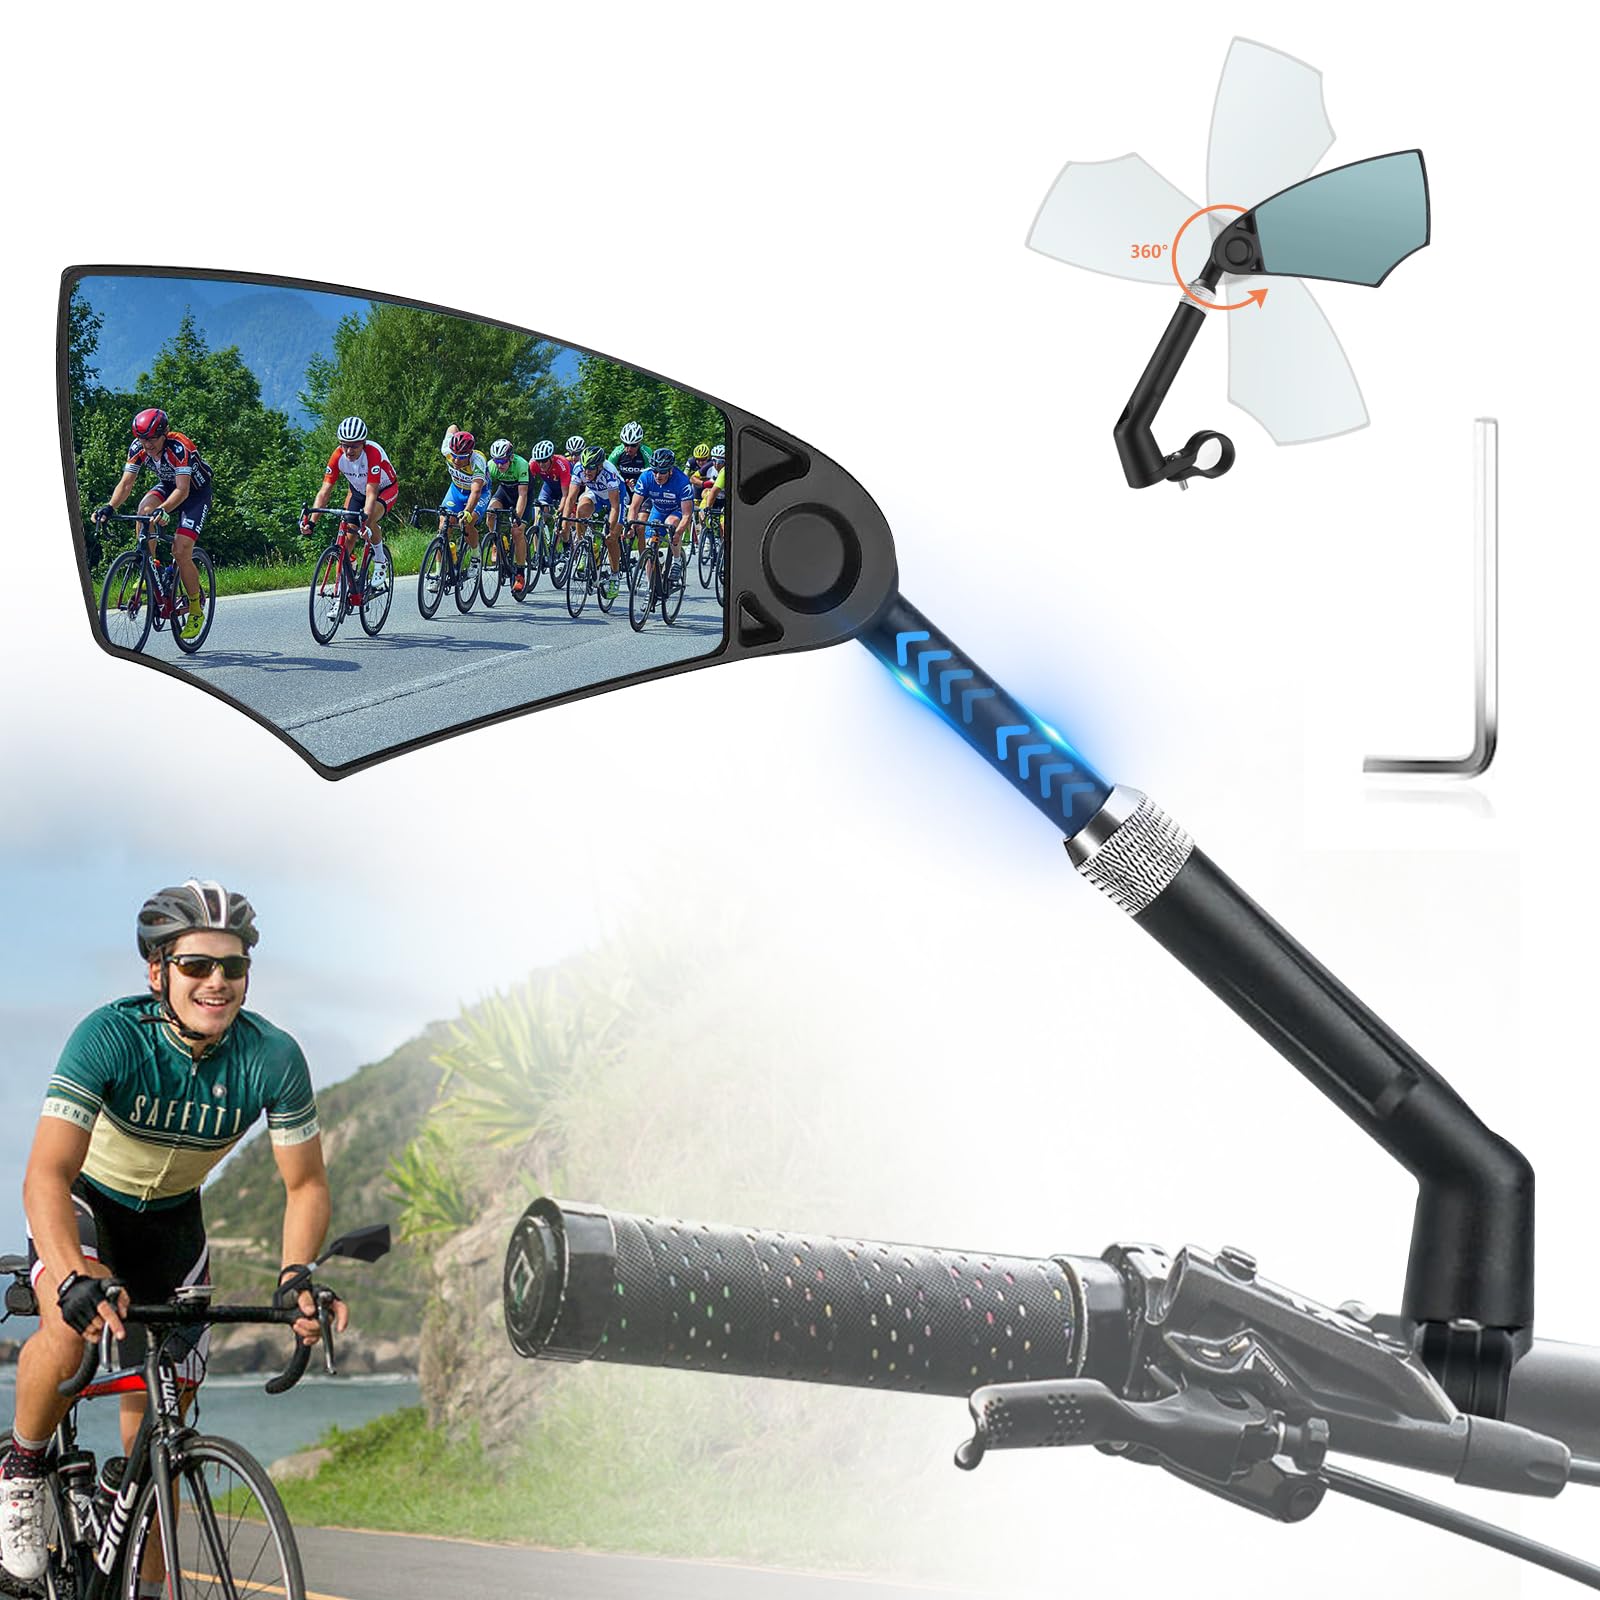 Fahrradspiegel,Dehnbar Rückspiegel Fahrrad,360° Drehbarer Fahrrad Spiegel Links für Rennrad MTB e-scooter e-bike,Fahrradspiegel für Lenker 20-23mm,Blaulichtglas,geringe Blendung (Links) von xiaowanwan